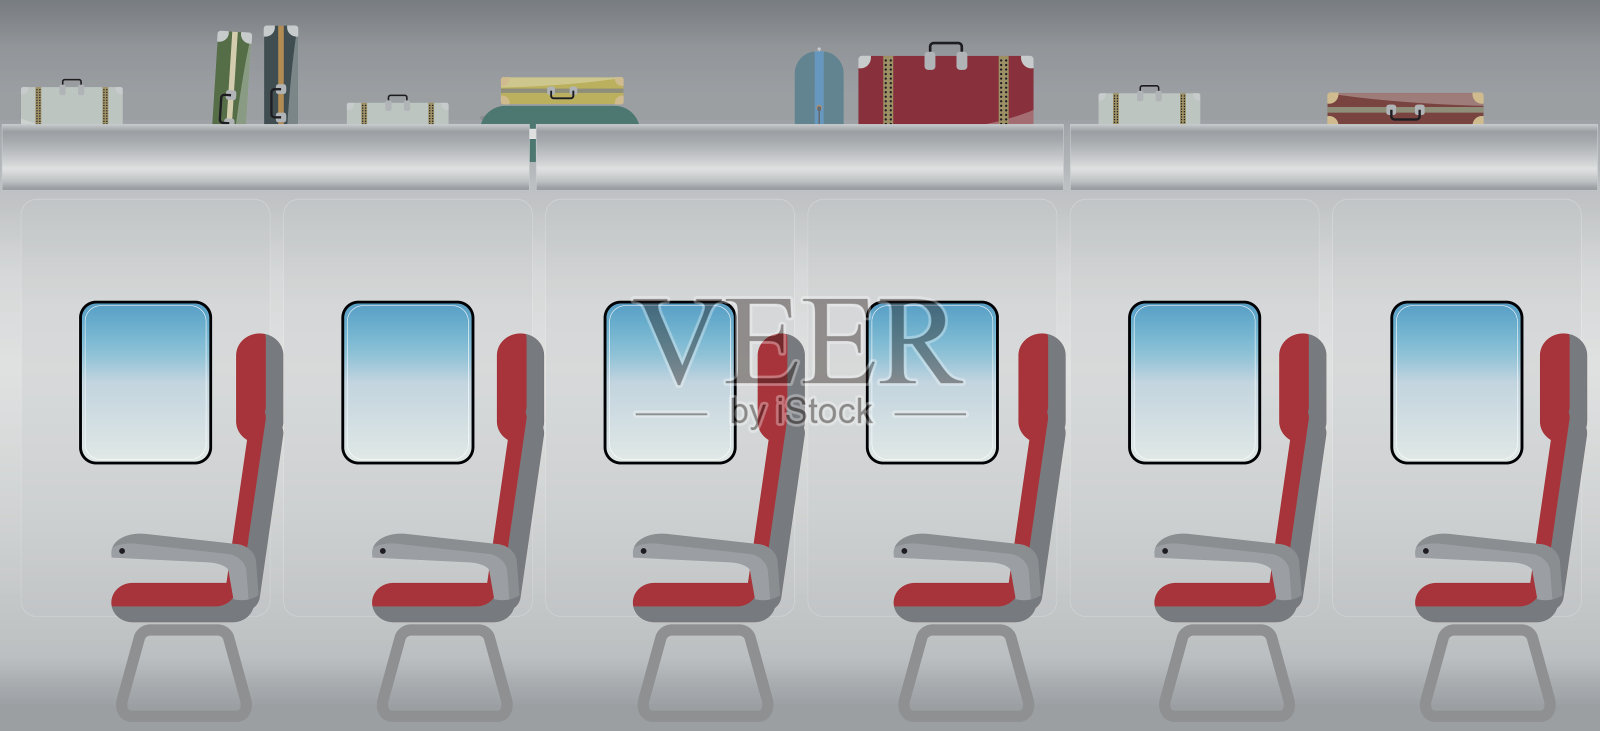 高速客运列车内部平面设计插画图片素材